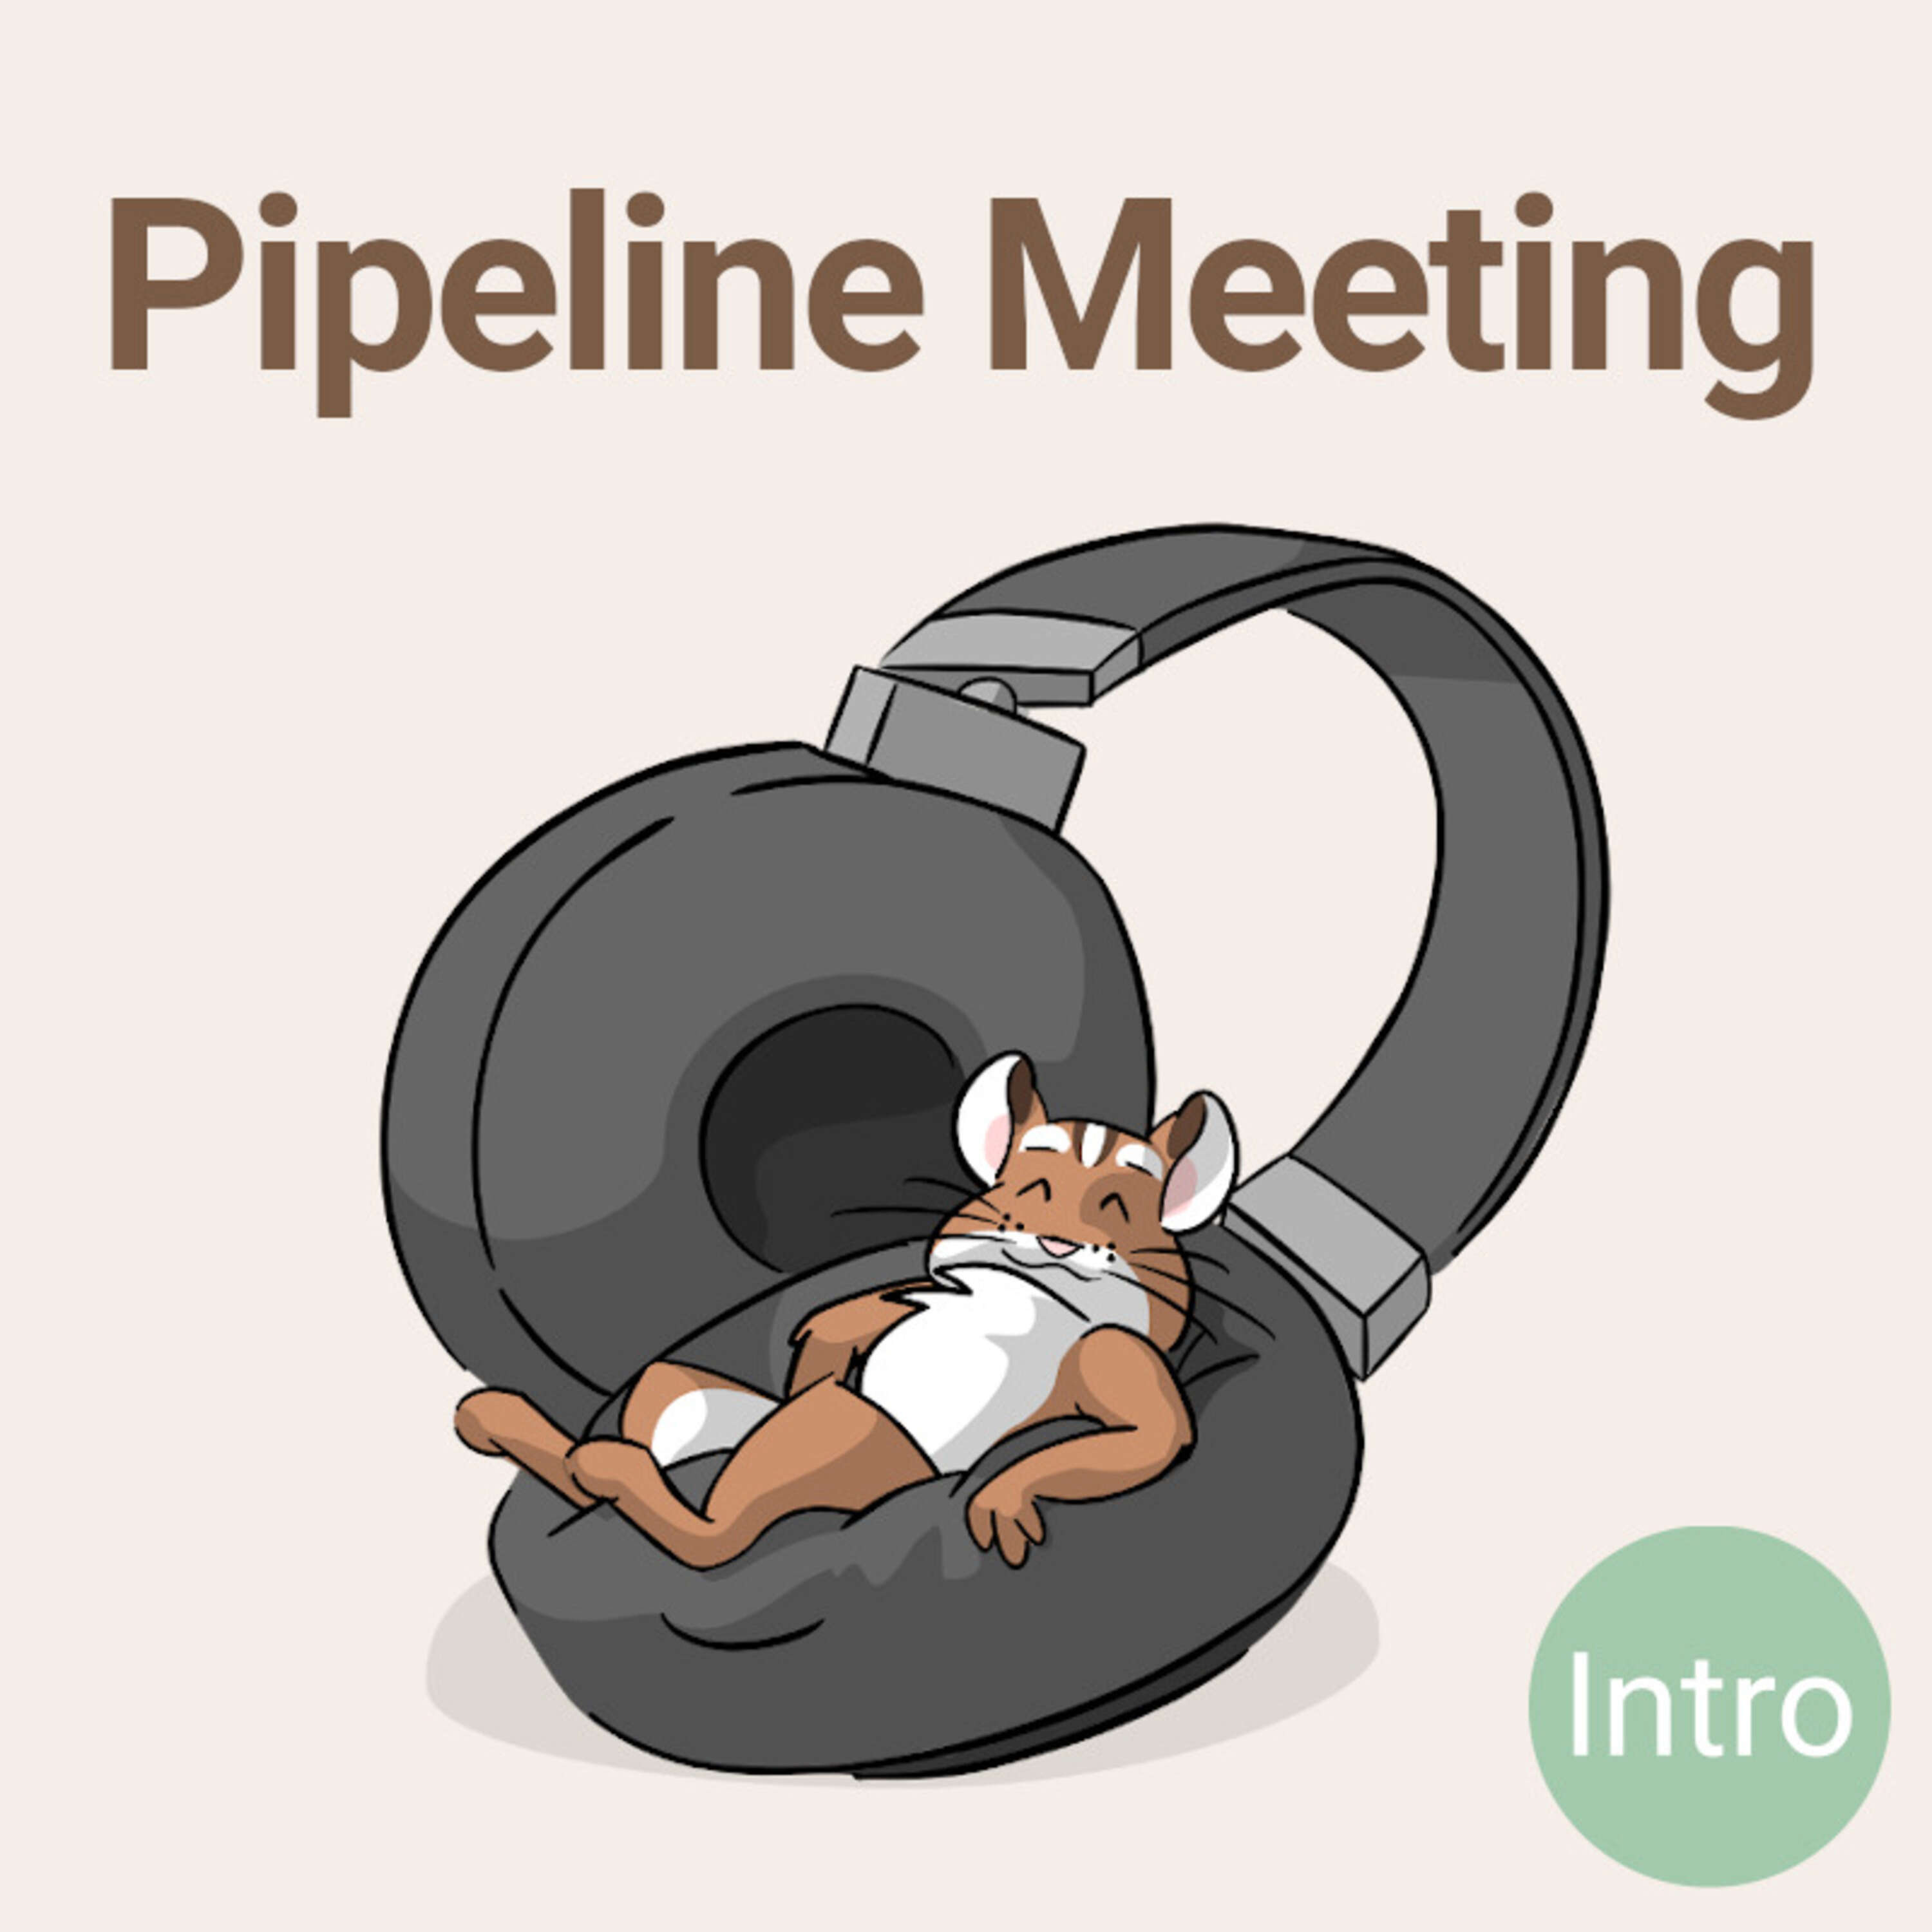 Pipeline Meeting